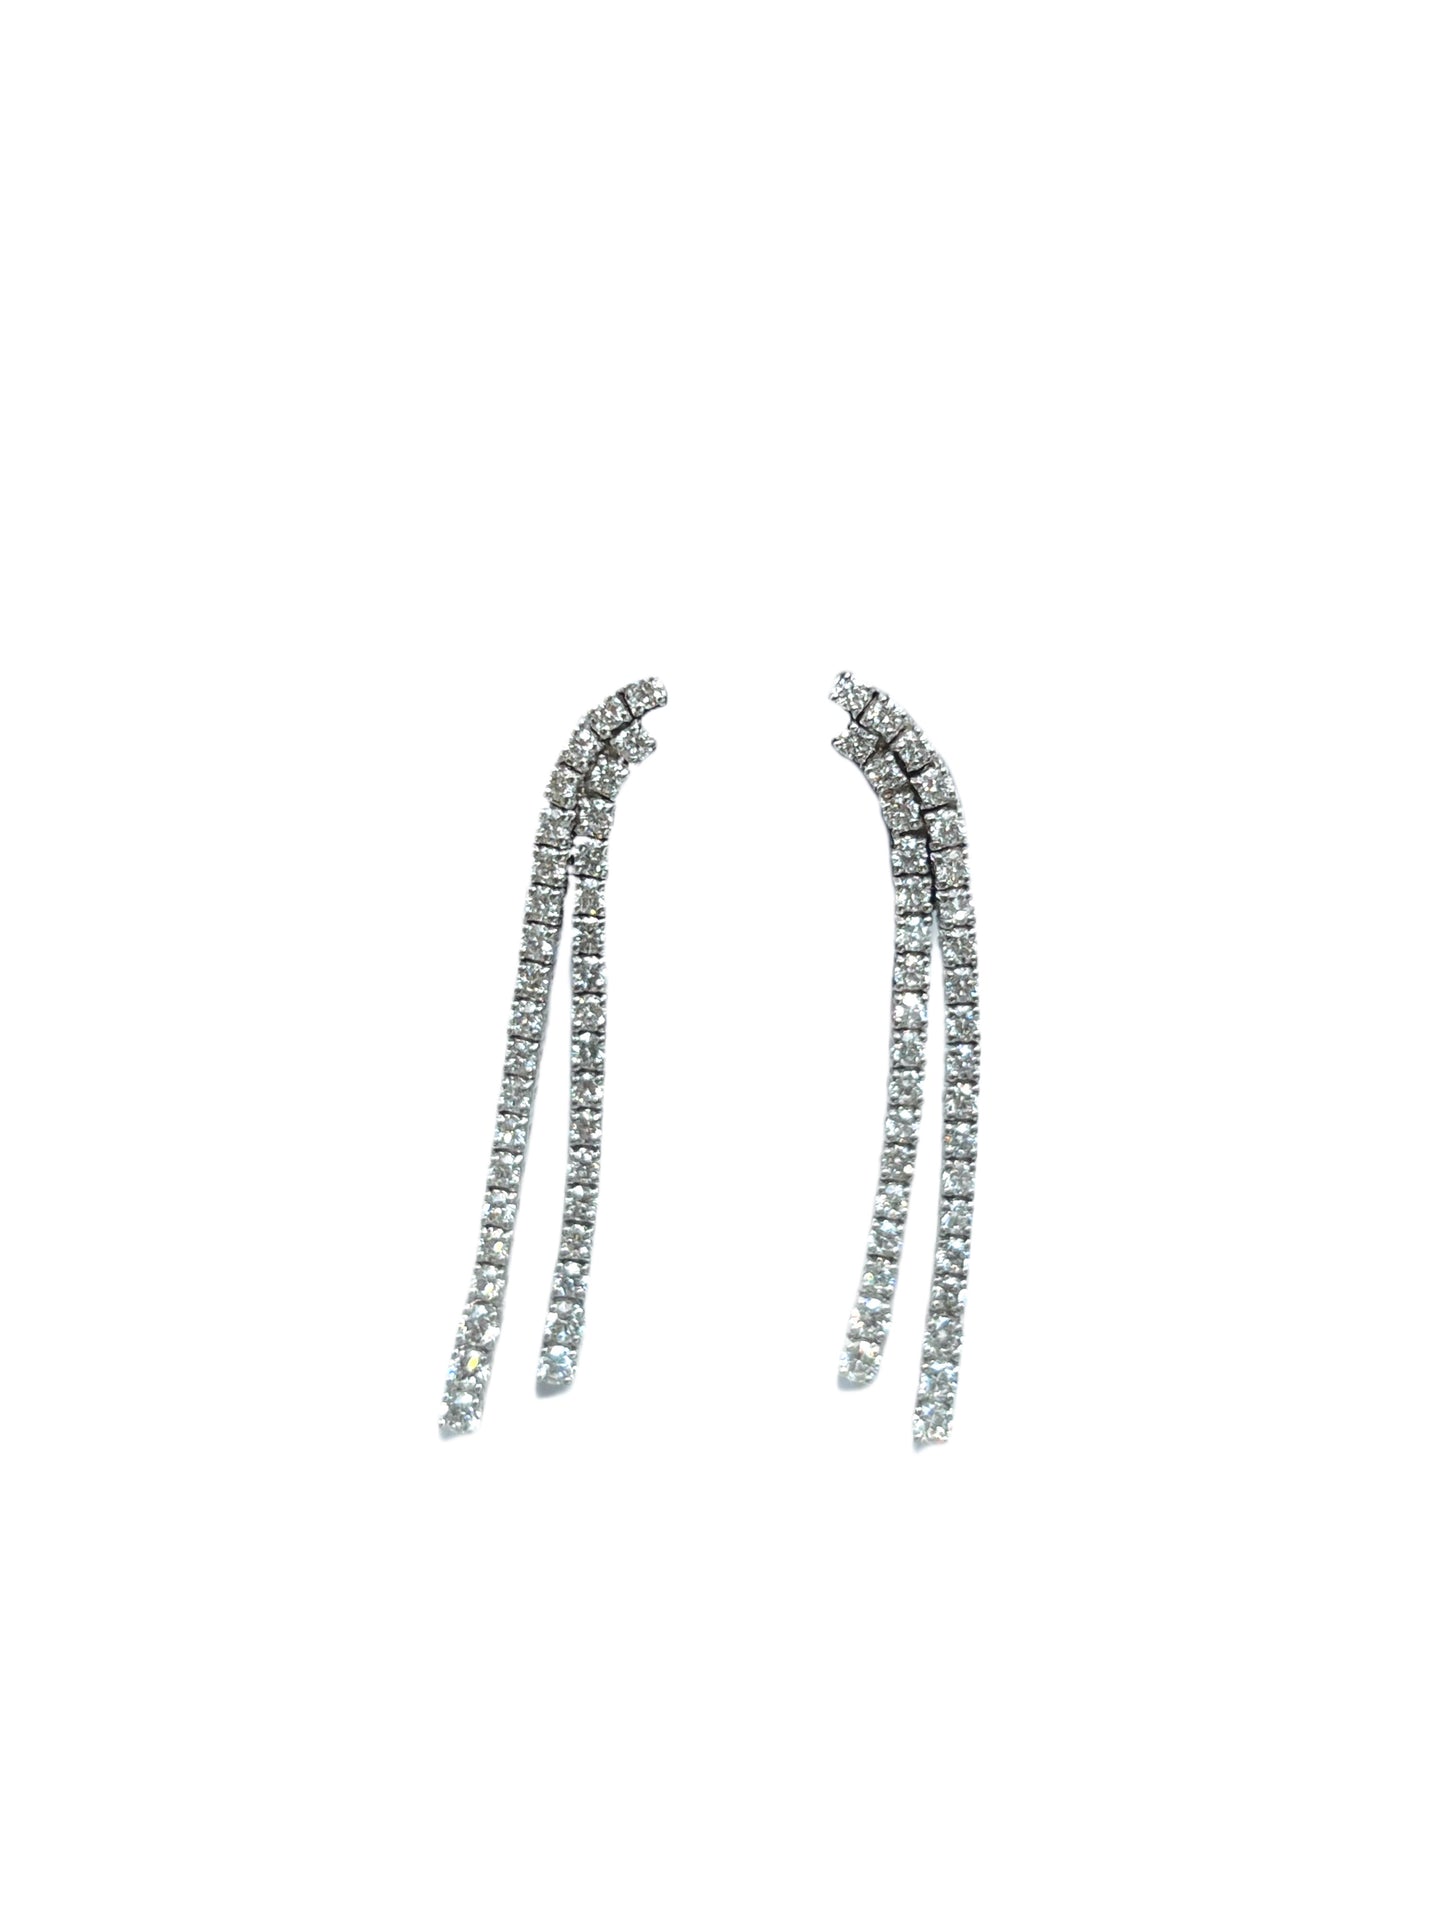 18k White Gold Long Tennis Earrings